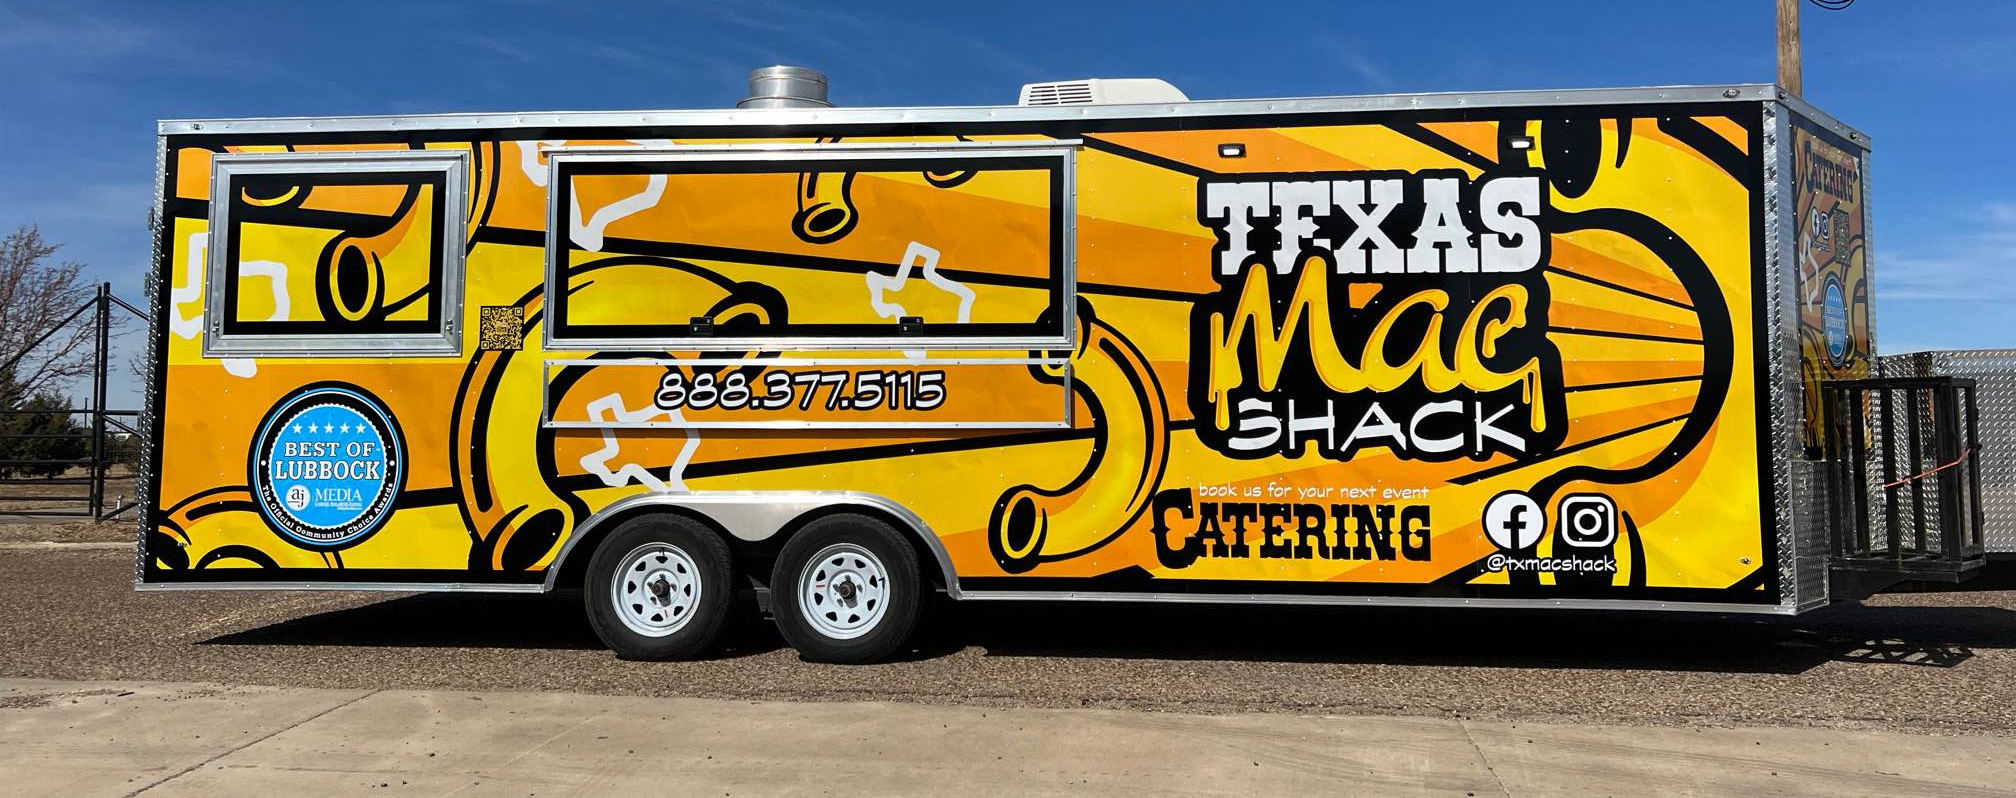 Texas Mac Shack